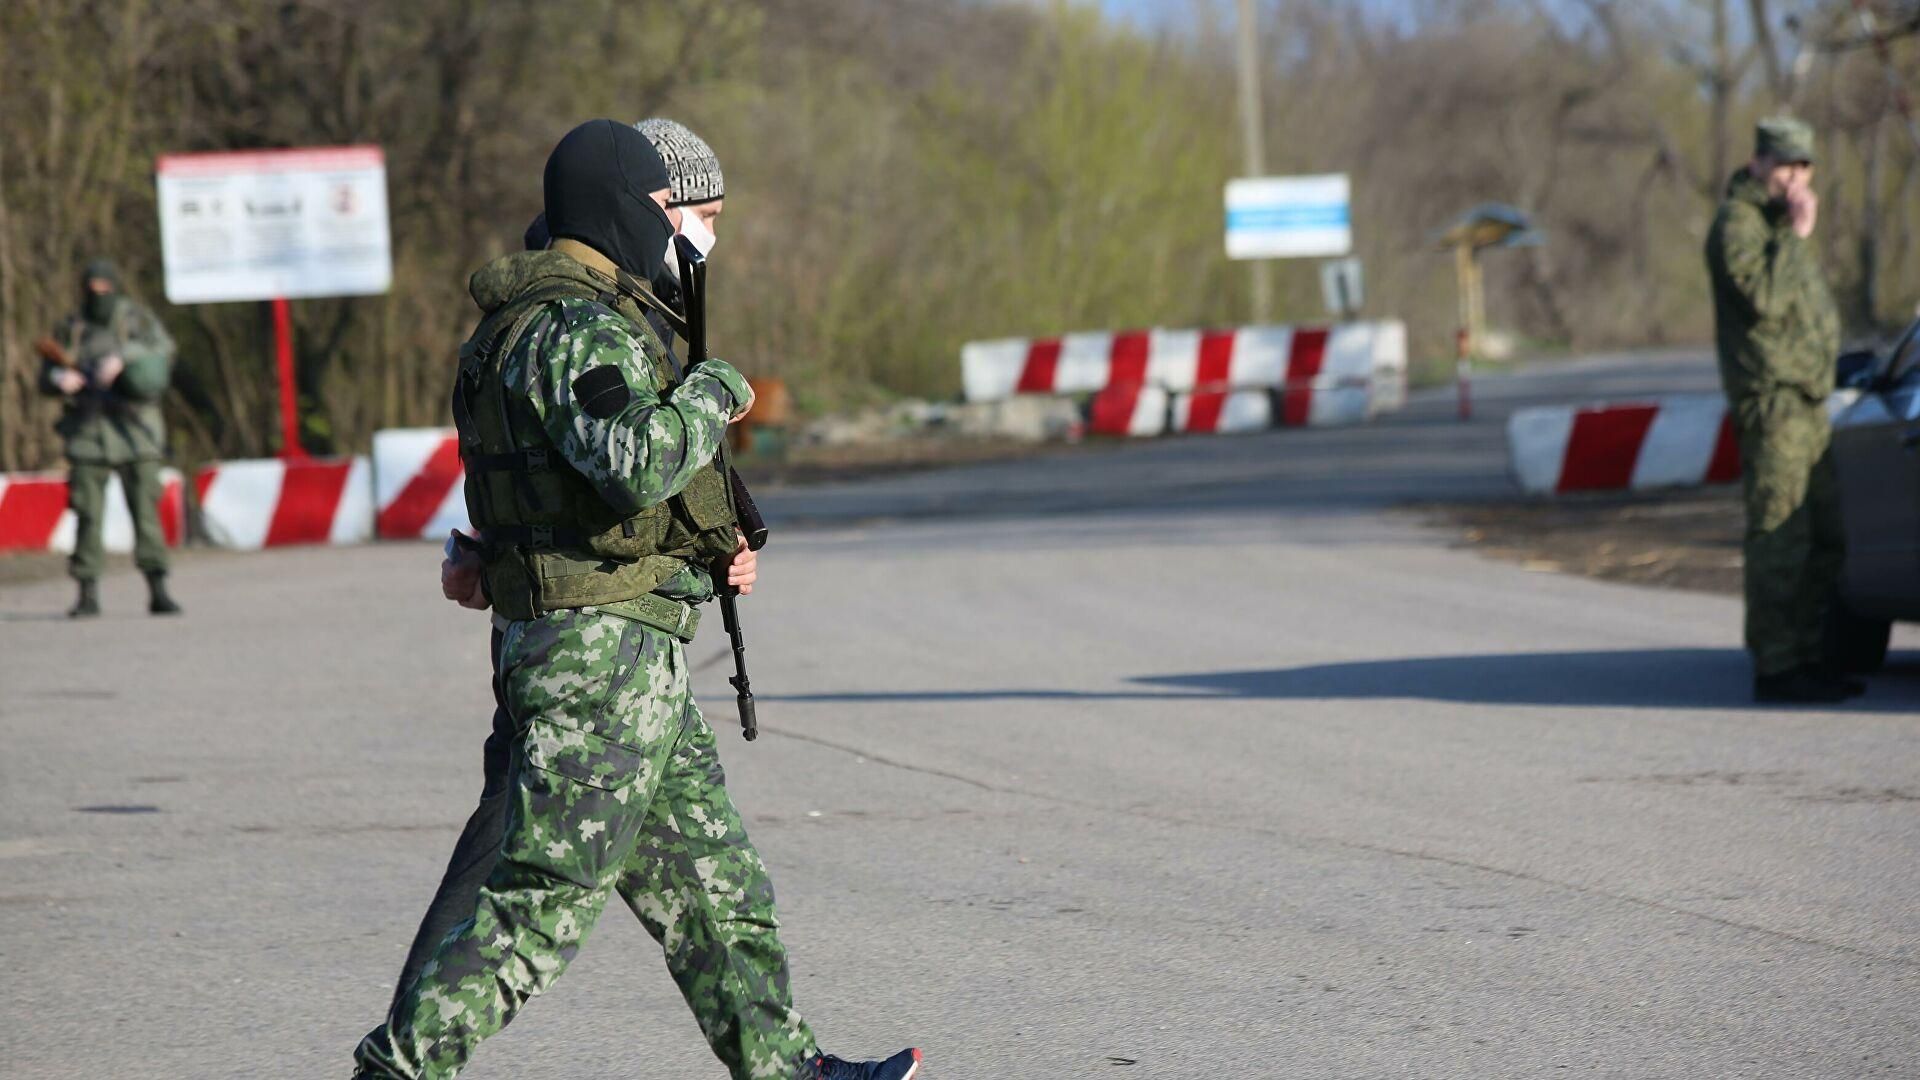 Прокуратура объявила подозрение главарю боевиков, что пытал бойцов ВСУ